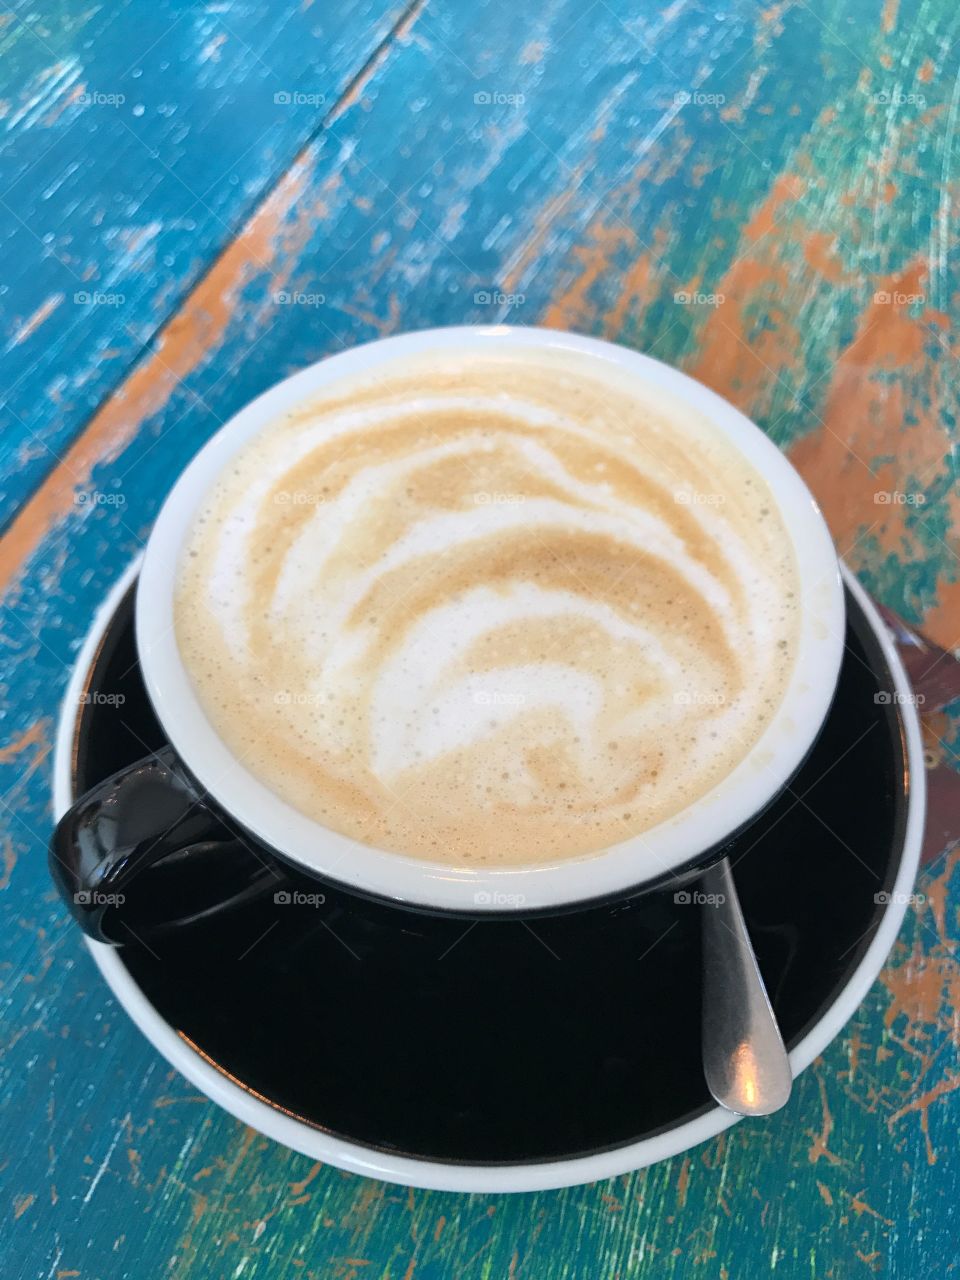 Coffee swirls, Break time! Mission